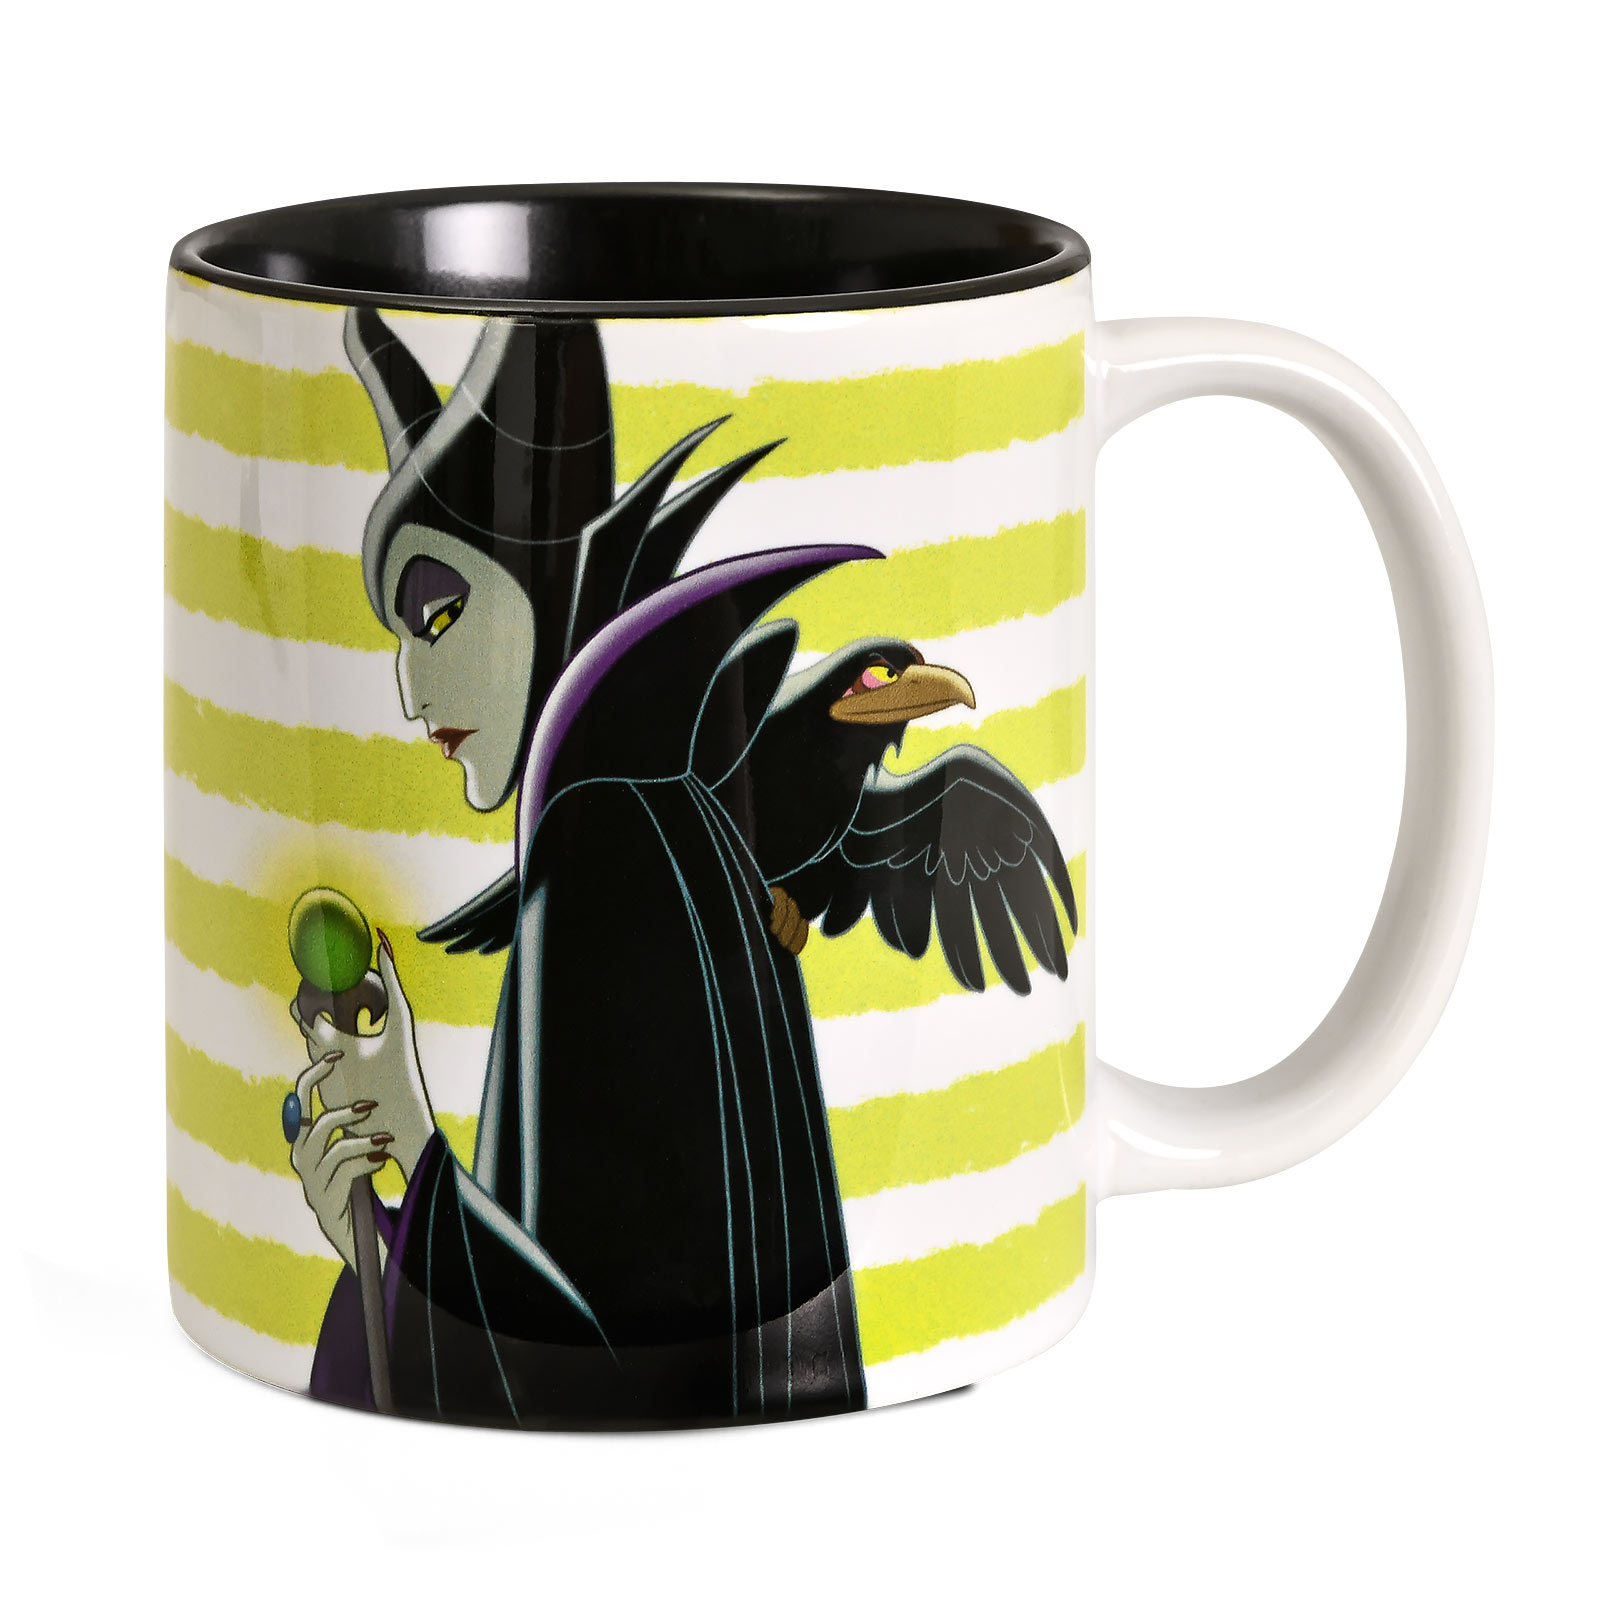 Maleficent - Tasse de personnage de méchants